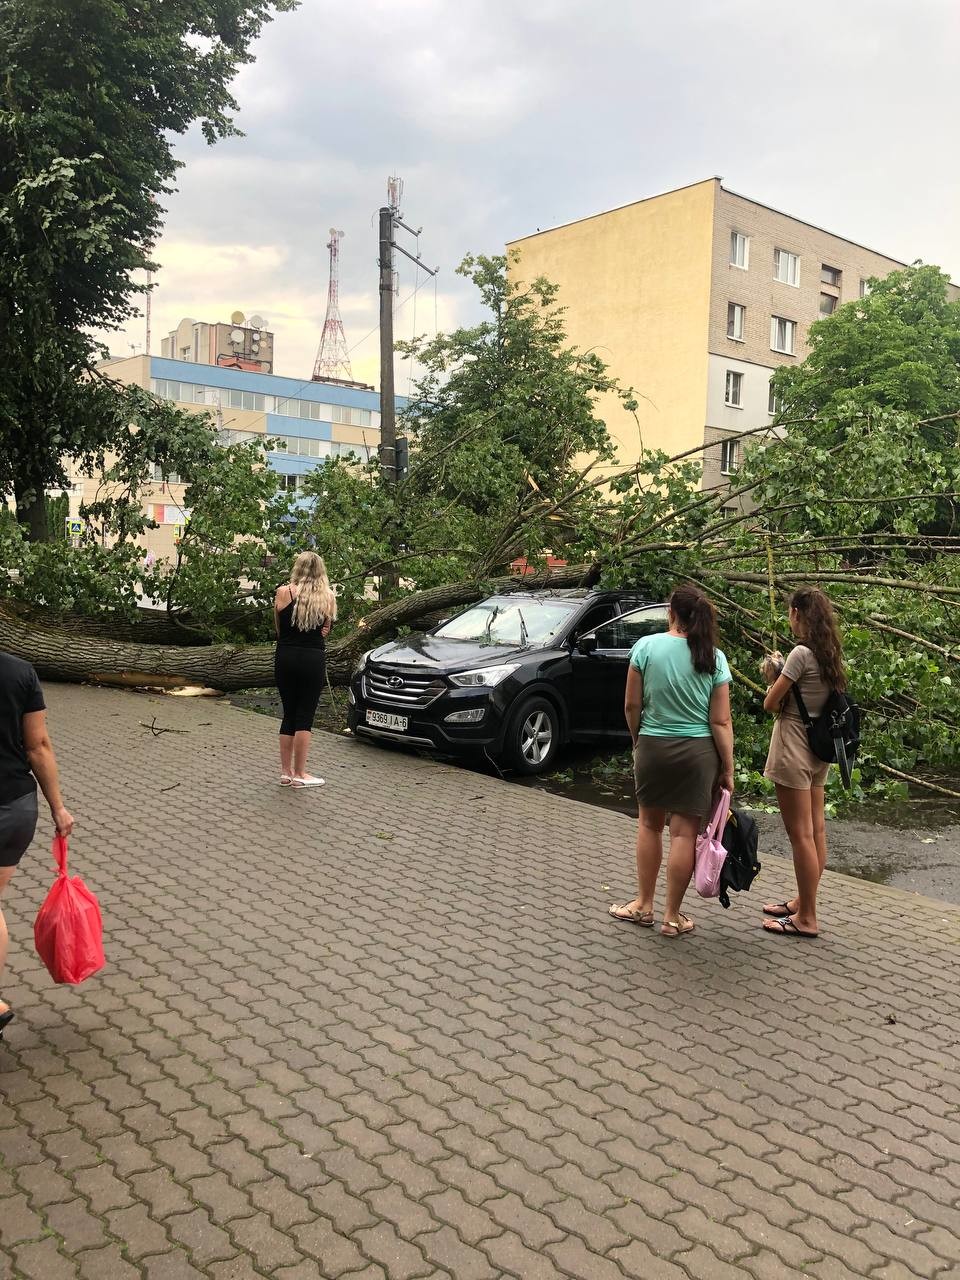 В Бобруйске дерево упало на автомобиль. Водитель не пострадал